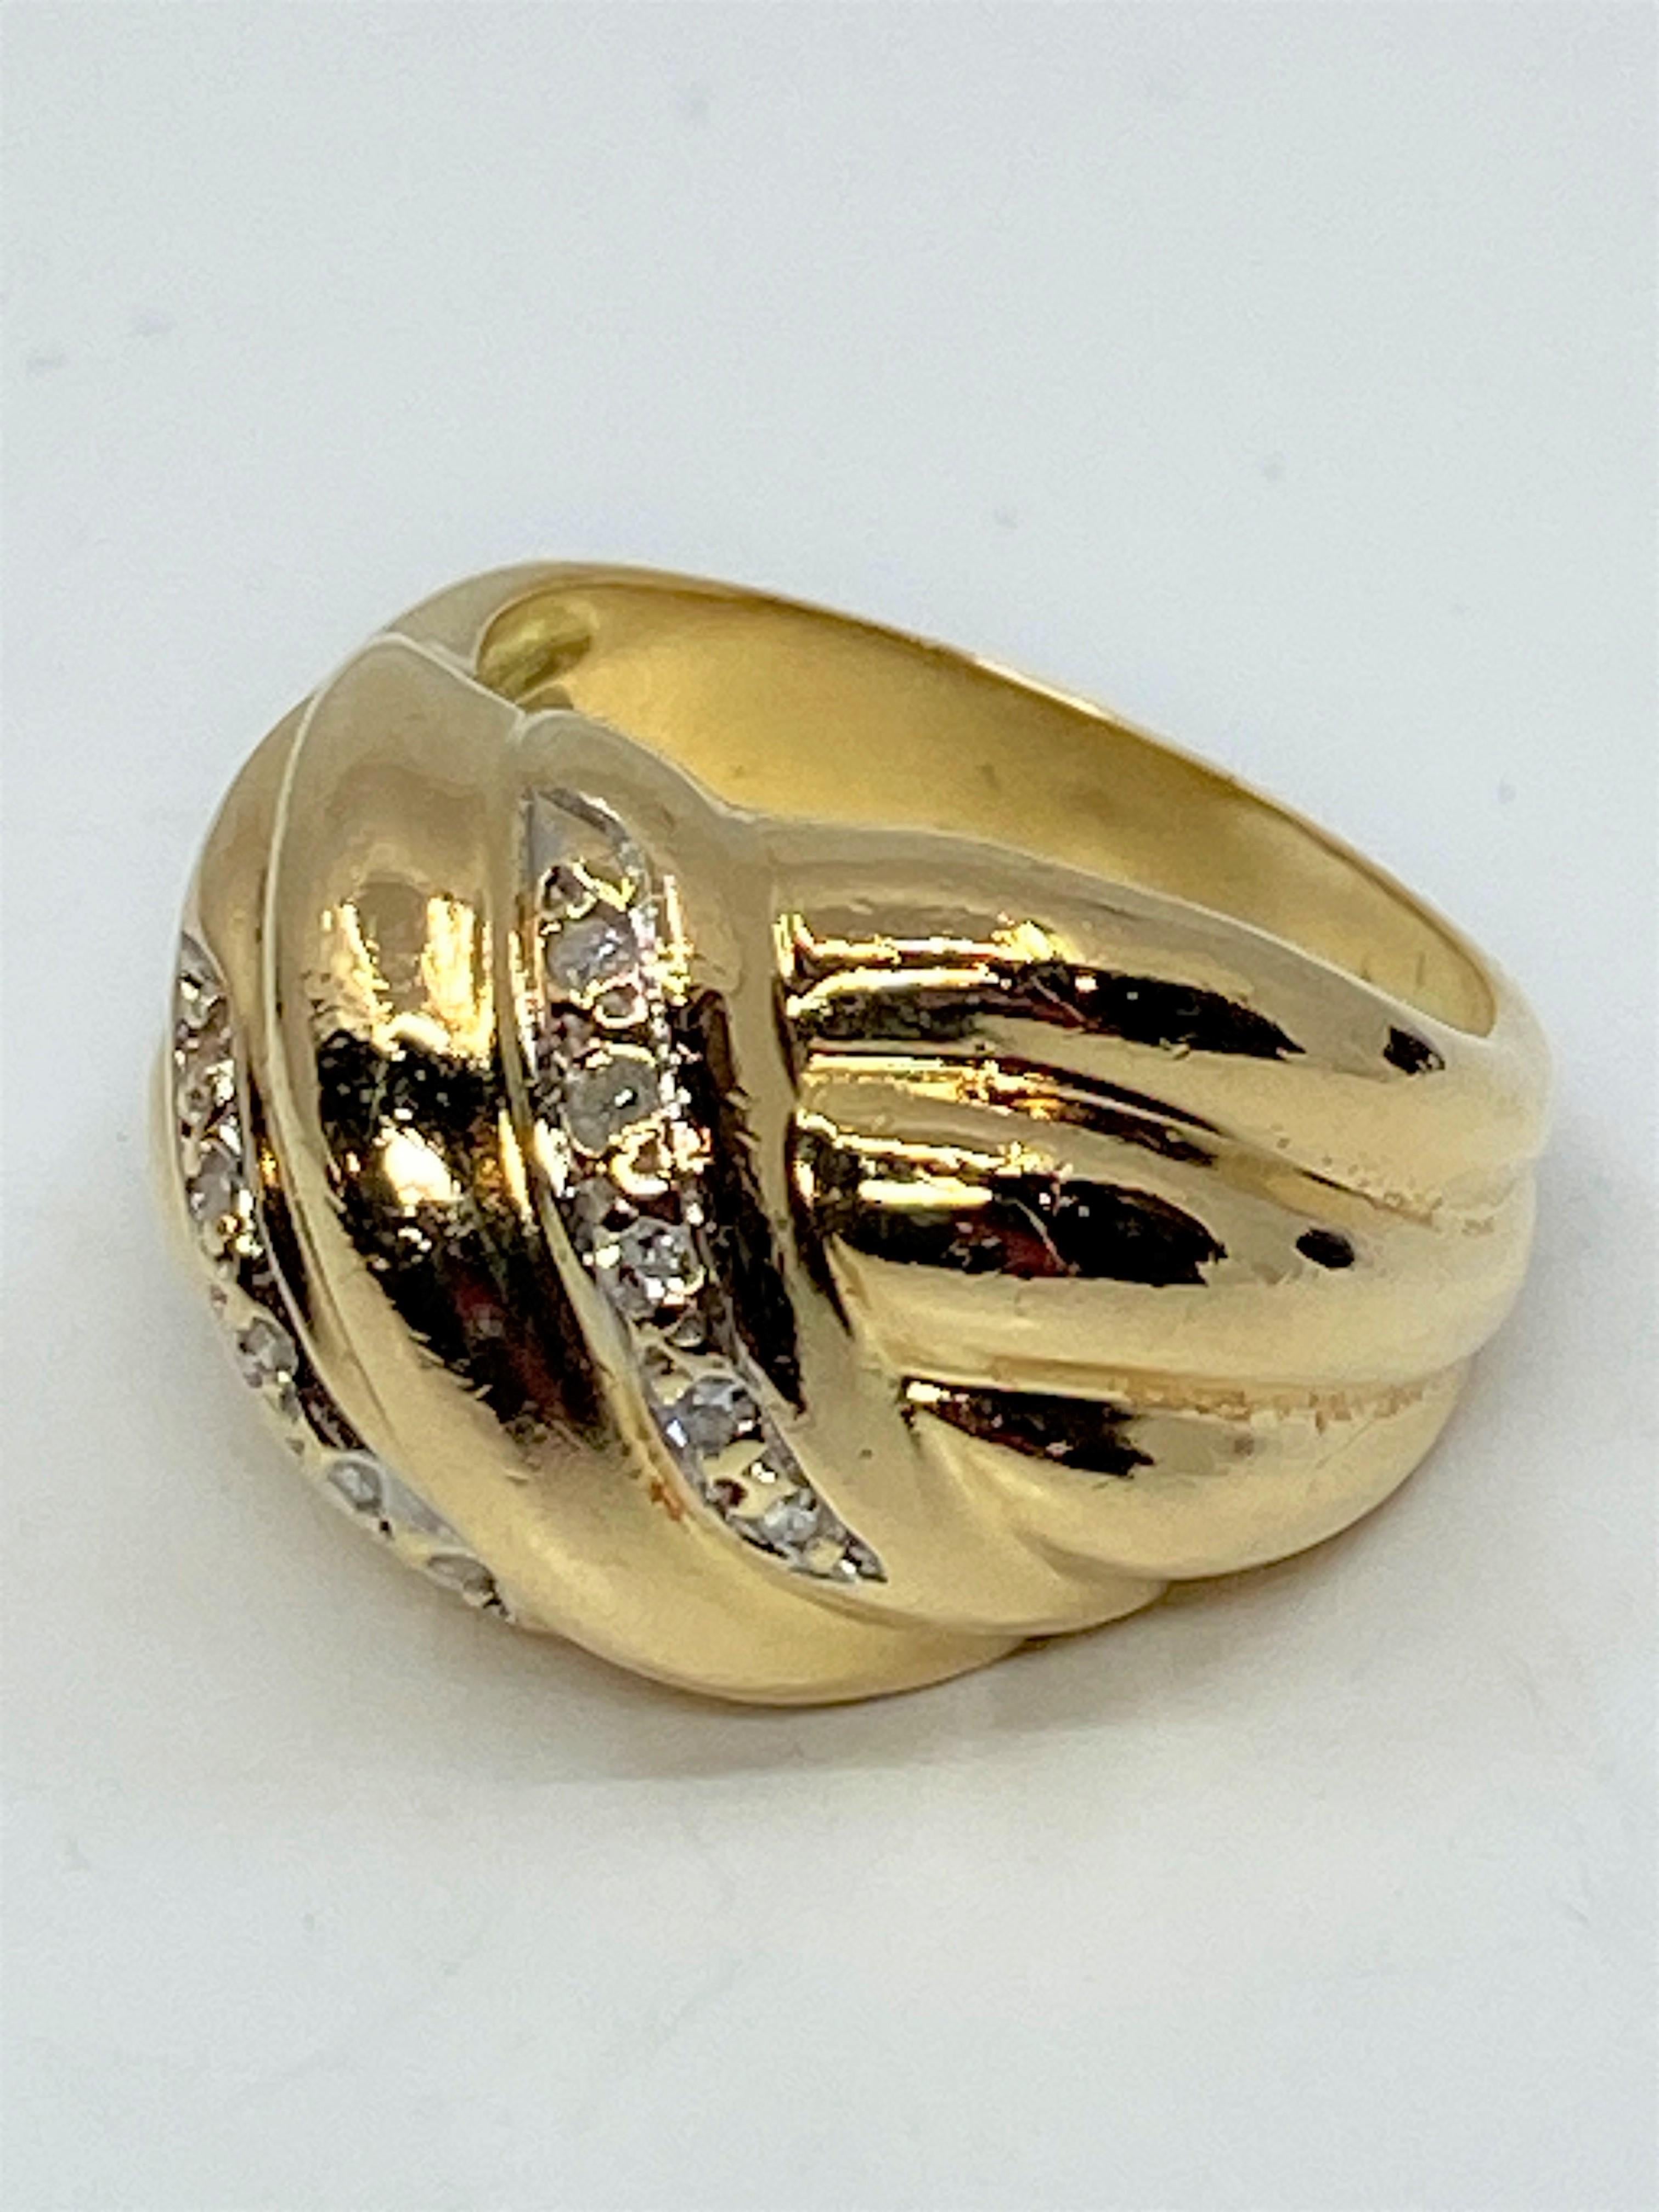 Bague en or jaune 18 carats de modèle godrons sertie de 2 lignes ornées de 10 diamants pour environ 0.10 carat au total. Le charme de cette bague est du à son volume tout en hauteur et en rondeur. Ses triples godrons s’affinant sur le doigt apporte